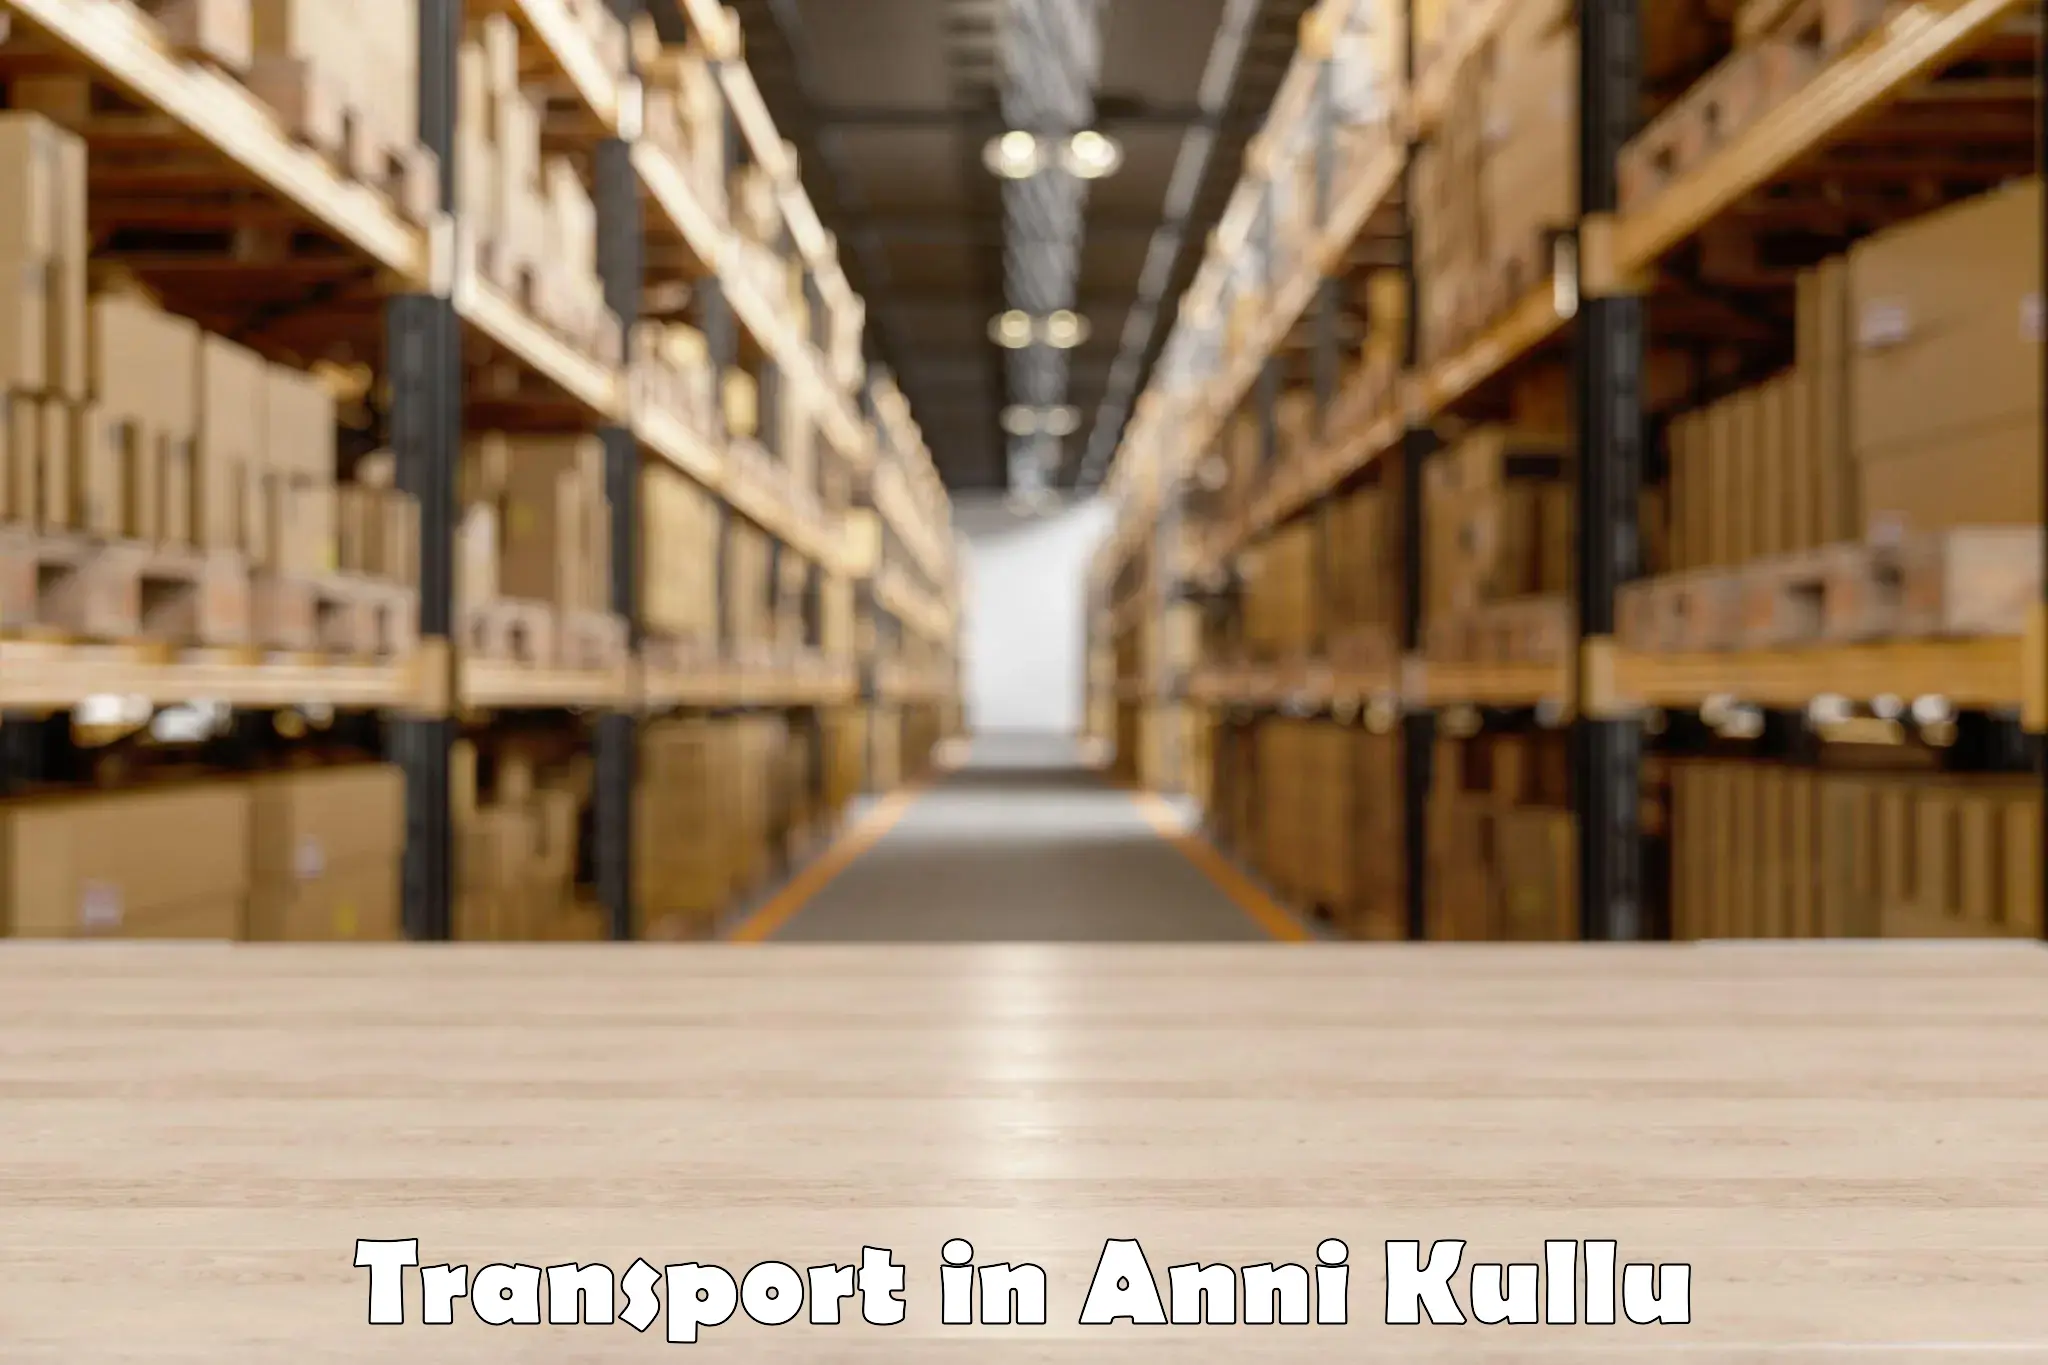 Container transport service in Anni Kullu